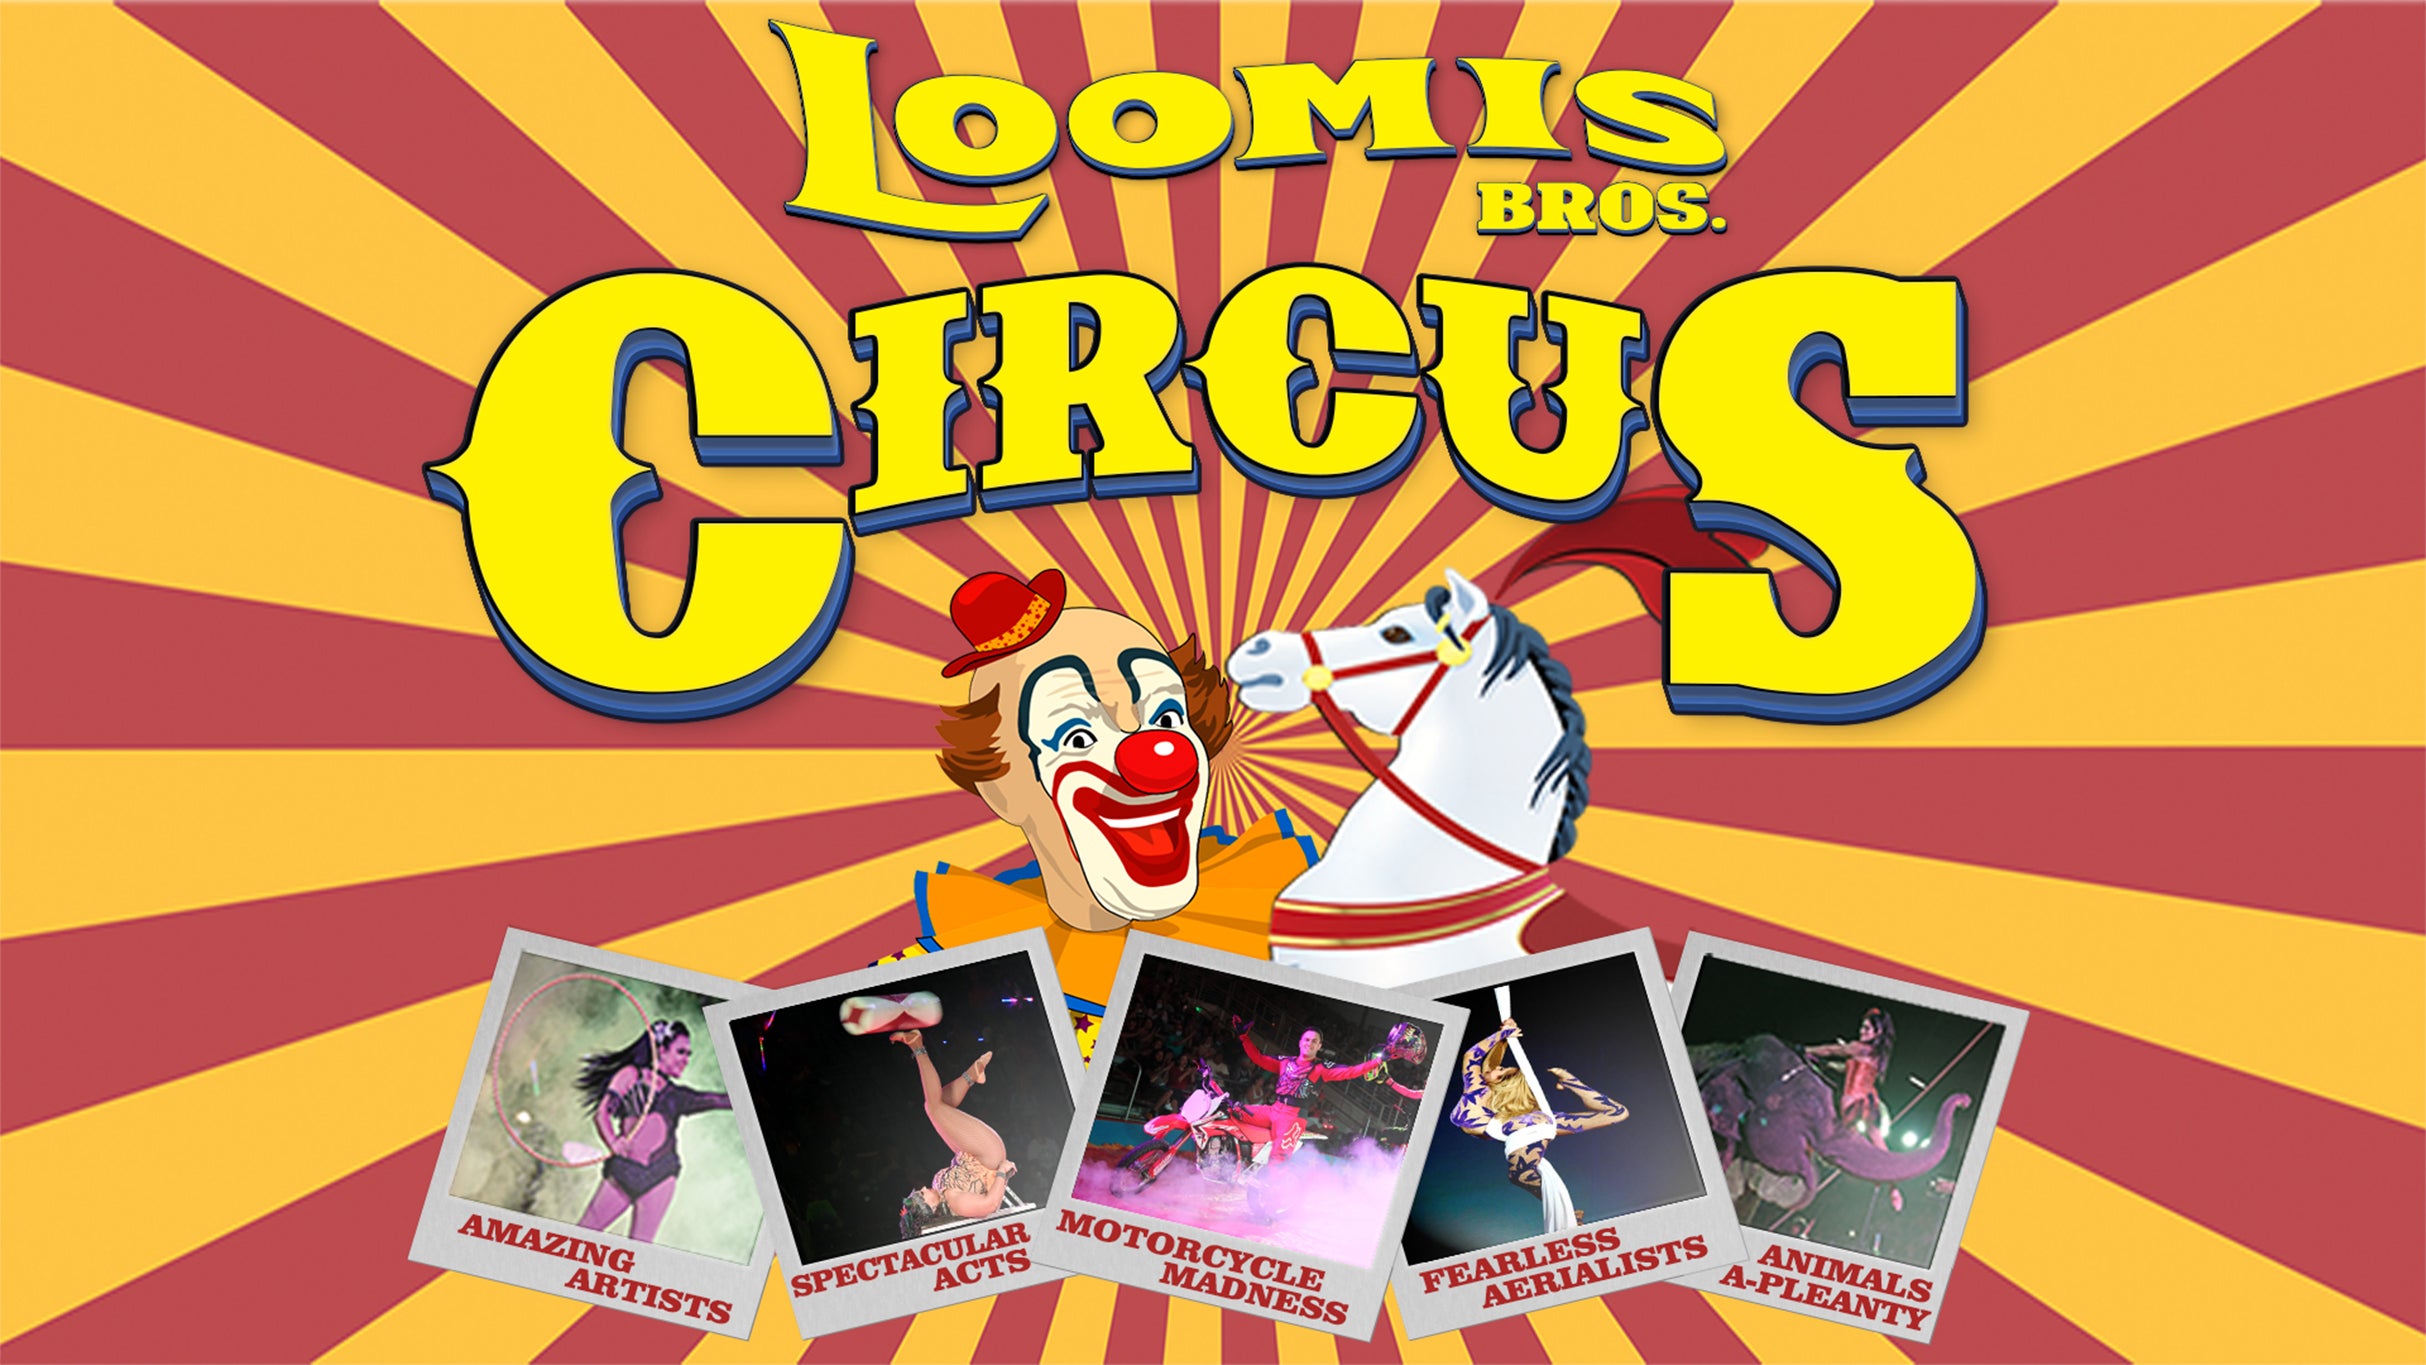 Loomis Bros. Circus - April 17 4:30pm at JAMES BROWN ARENA